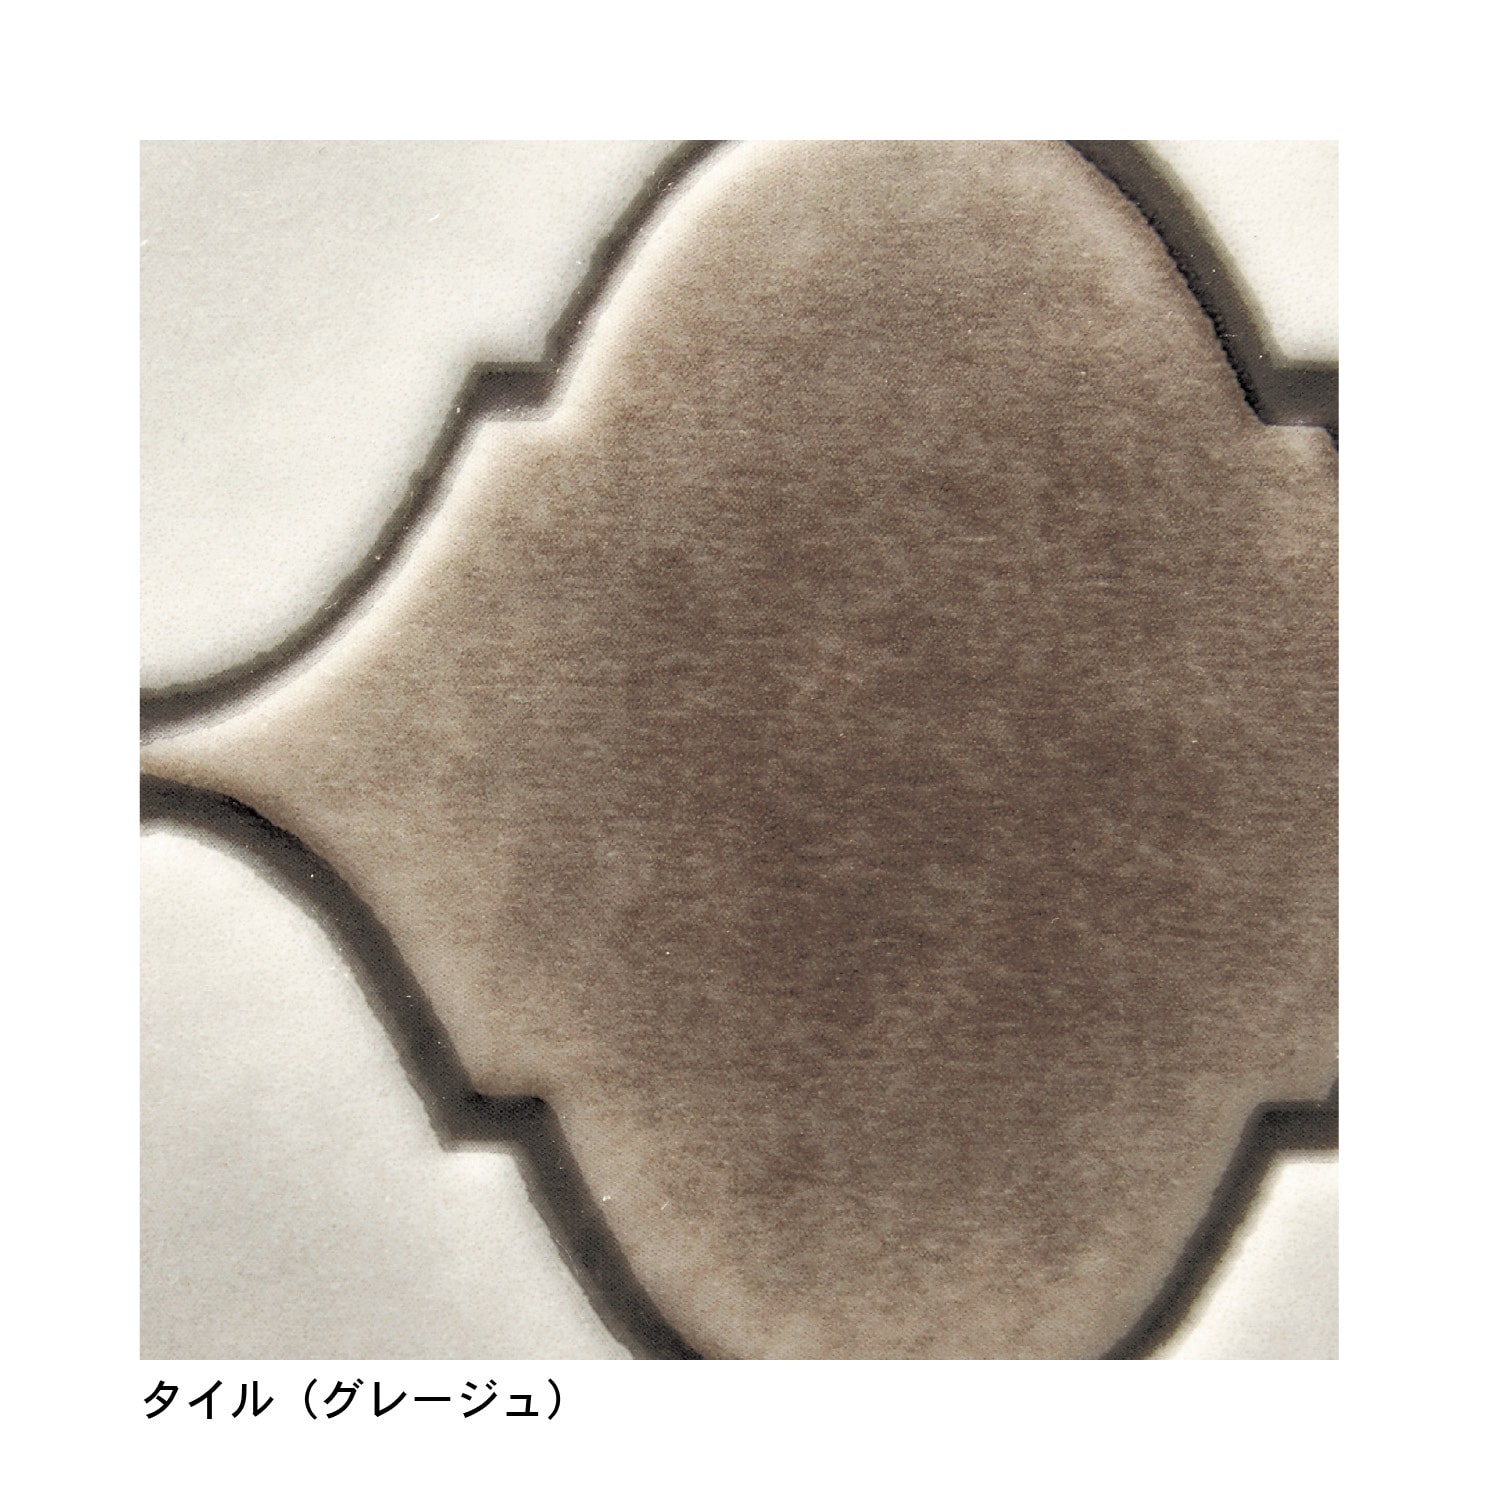 ベルメゾン 拭けるキッチンマット[日本製] ヘリンボーン 約45×150(約45×150 ヘリンボーン): ベルメゾン JRE MALL店